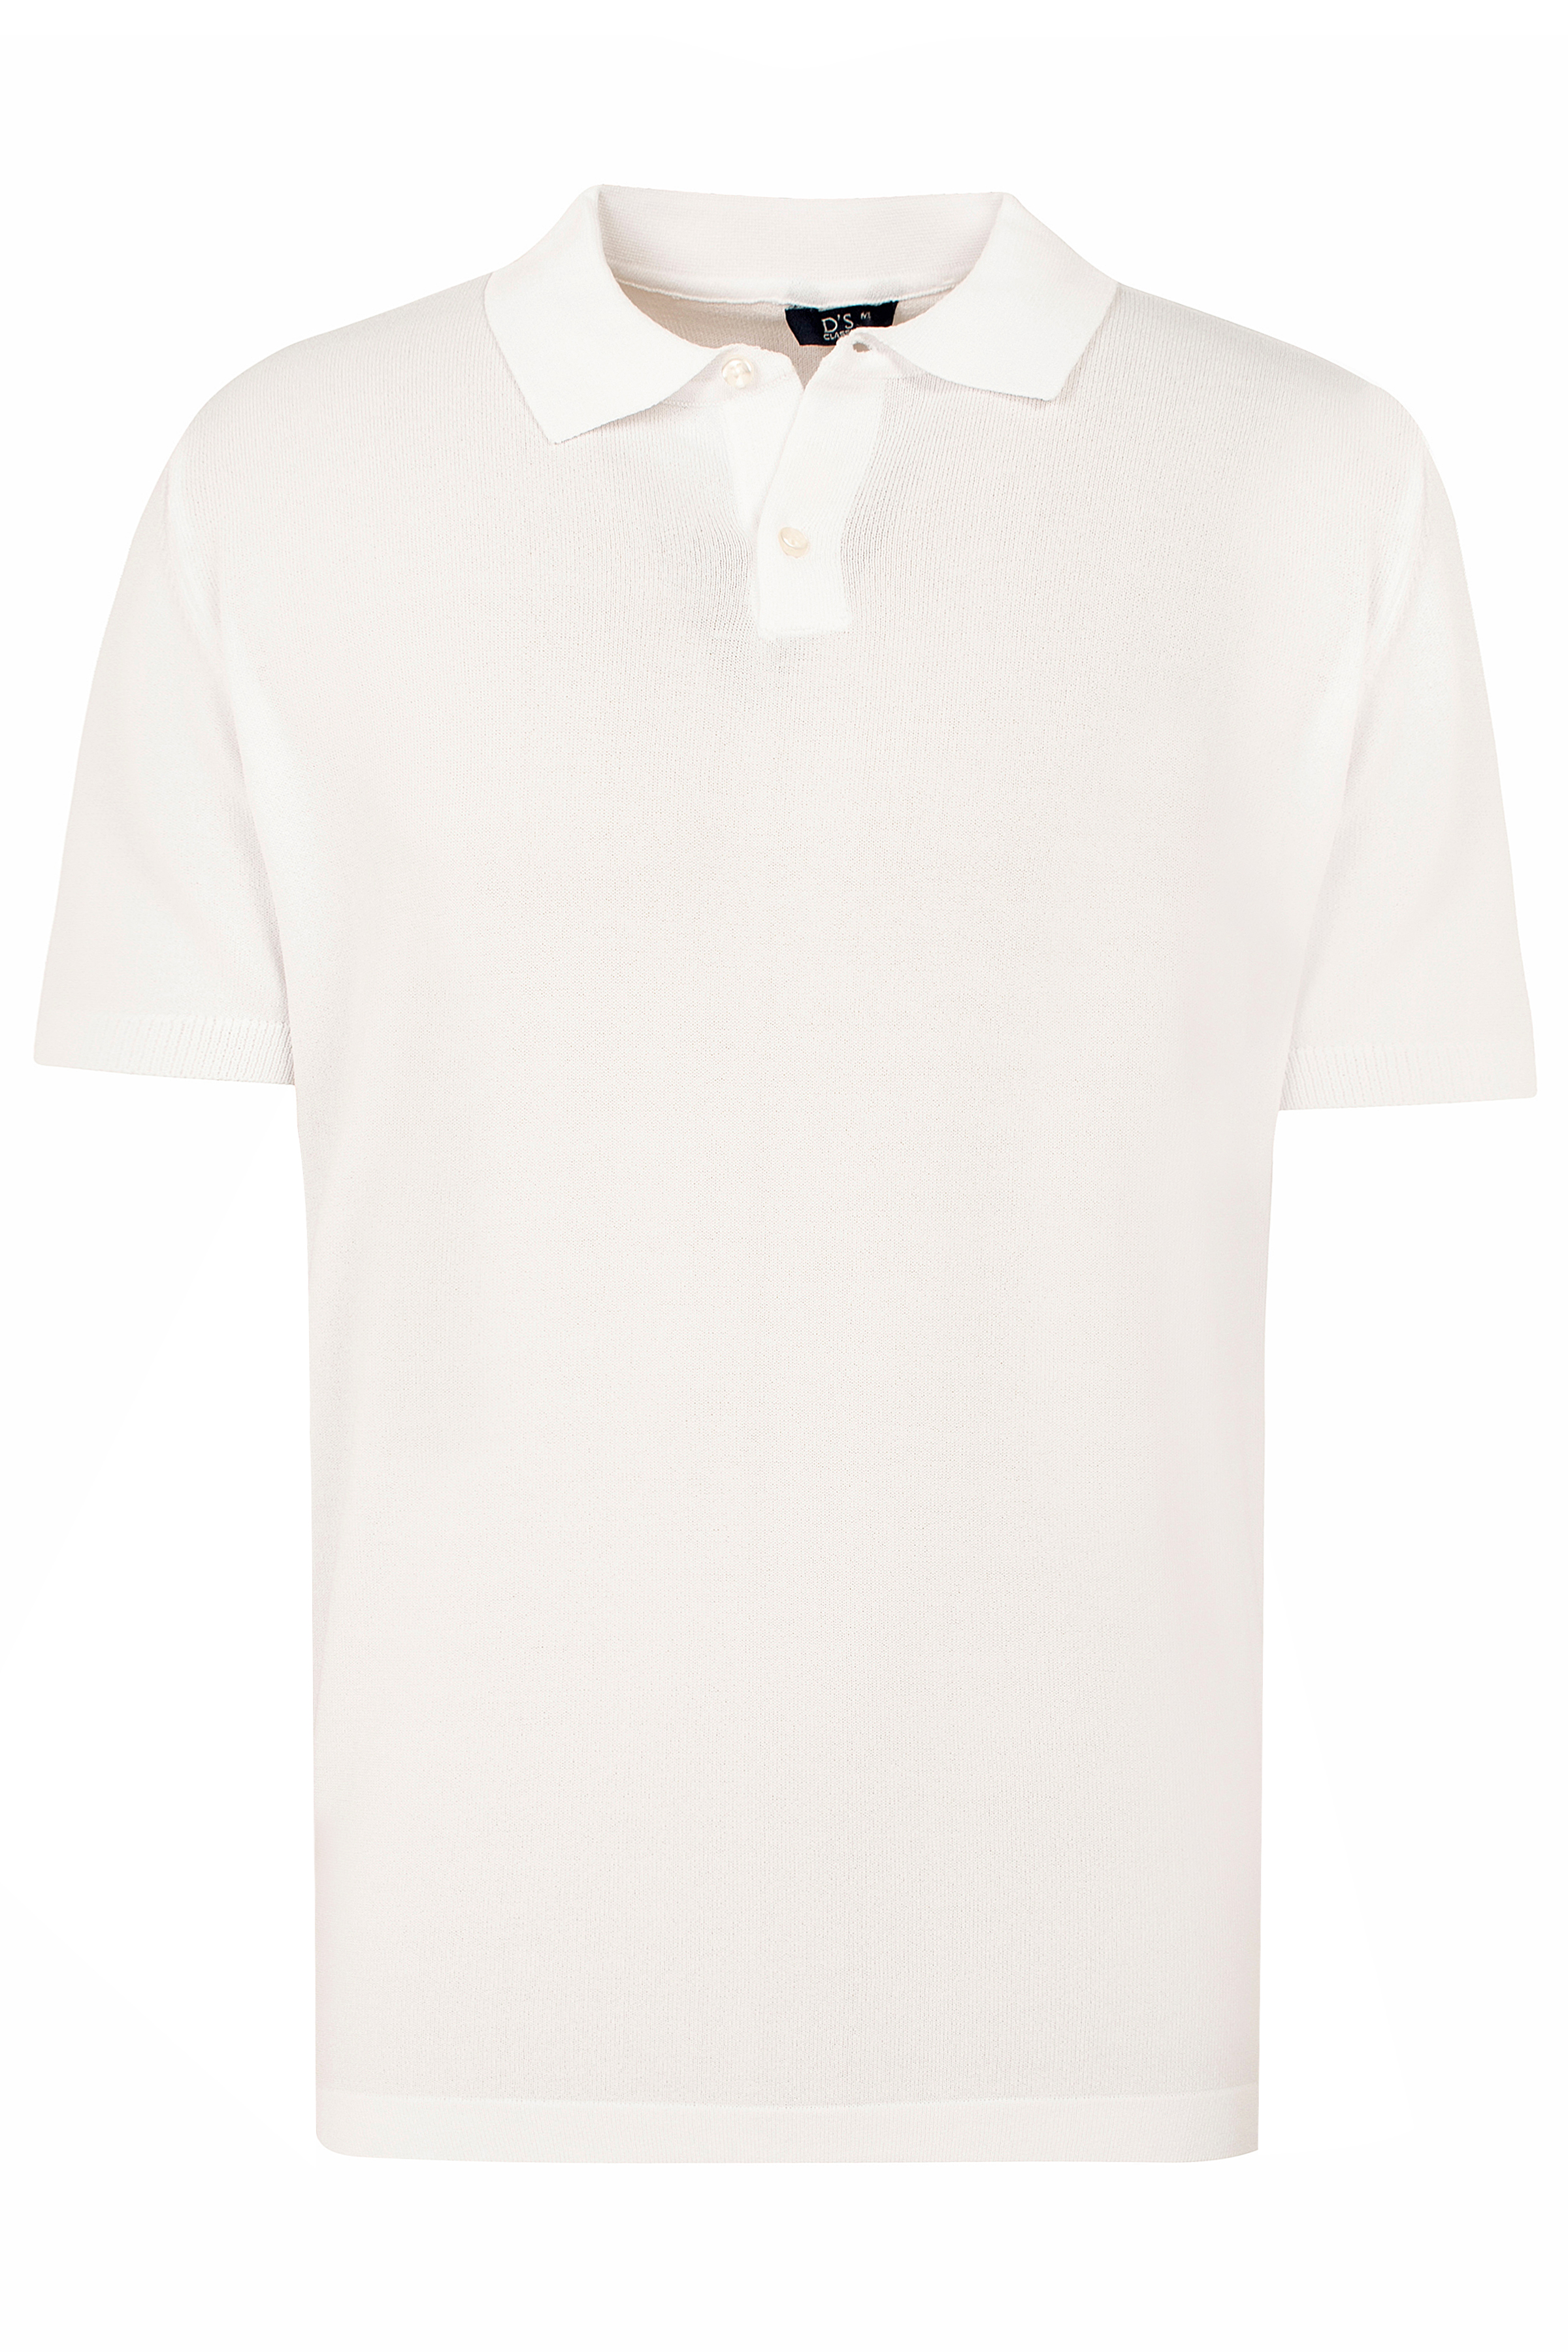 Ds Damat Slim Fit Beyaz Düz Örgü Rayon T-shirt. 1